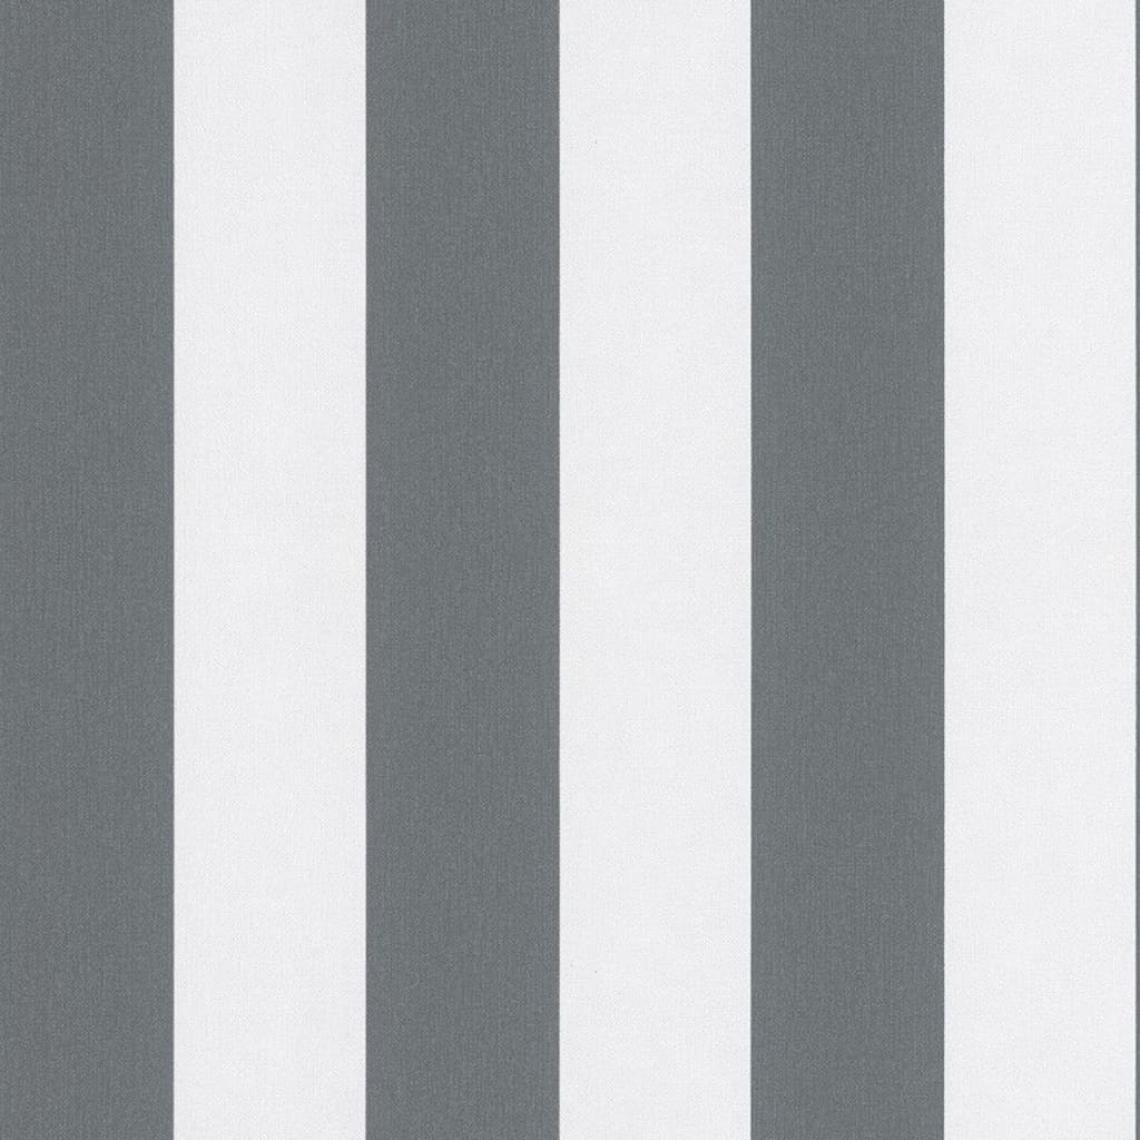 TOPCHIC - Topchic Papier peint Stripes Gris foncé et blanc - Papier peint